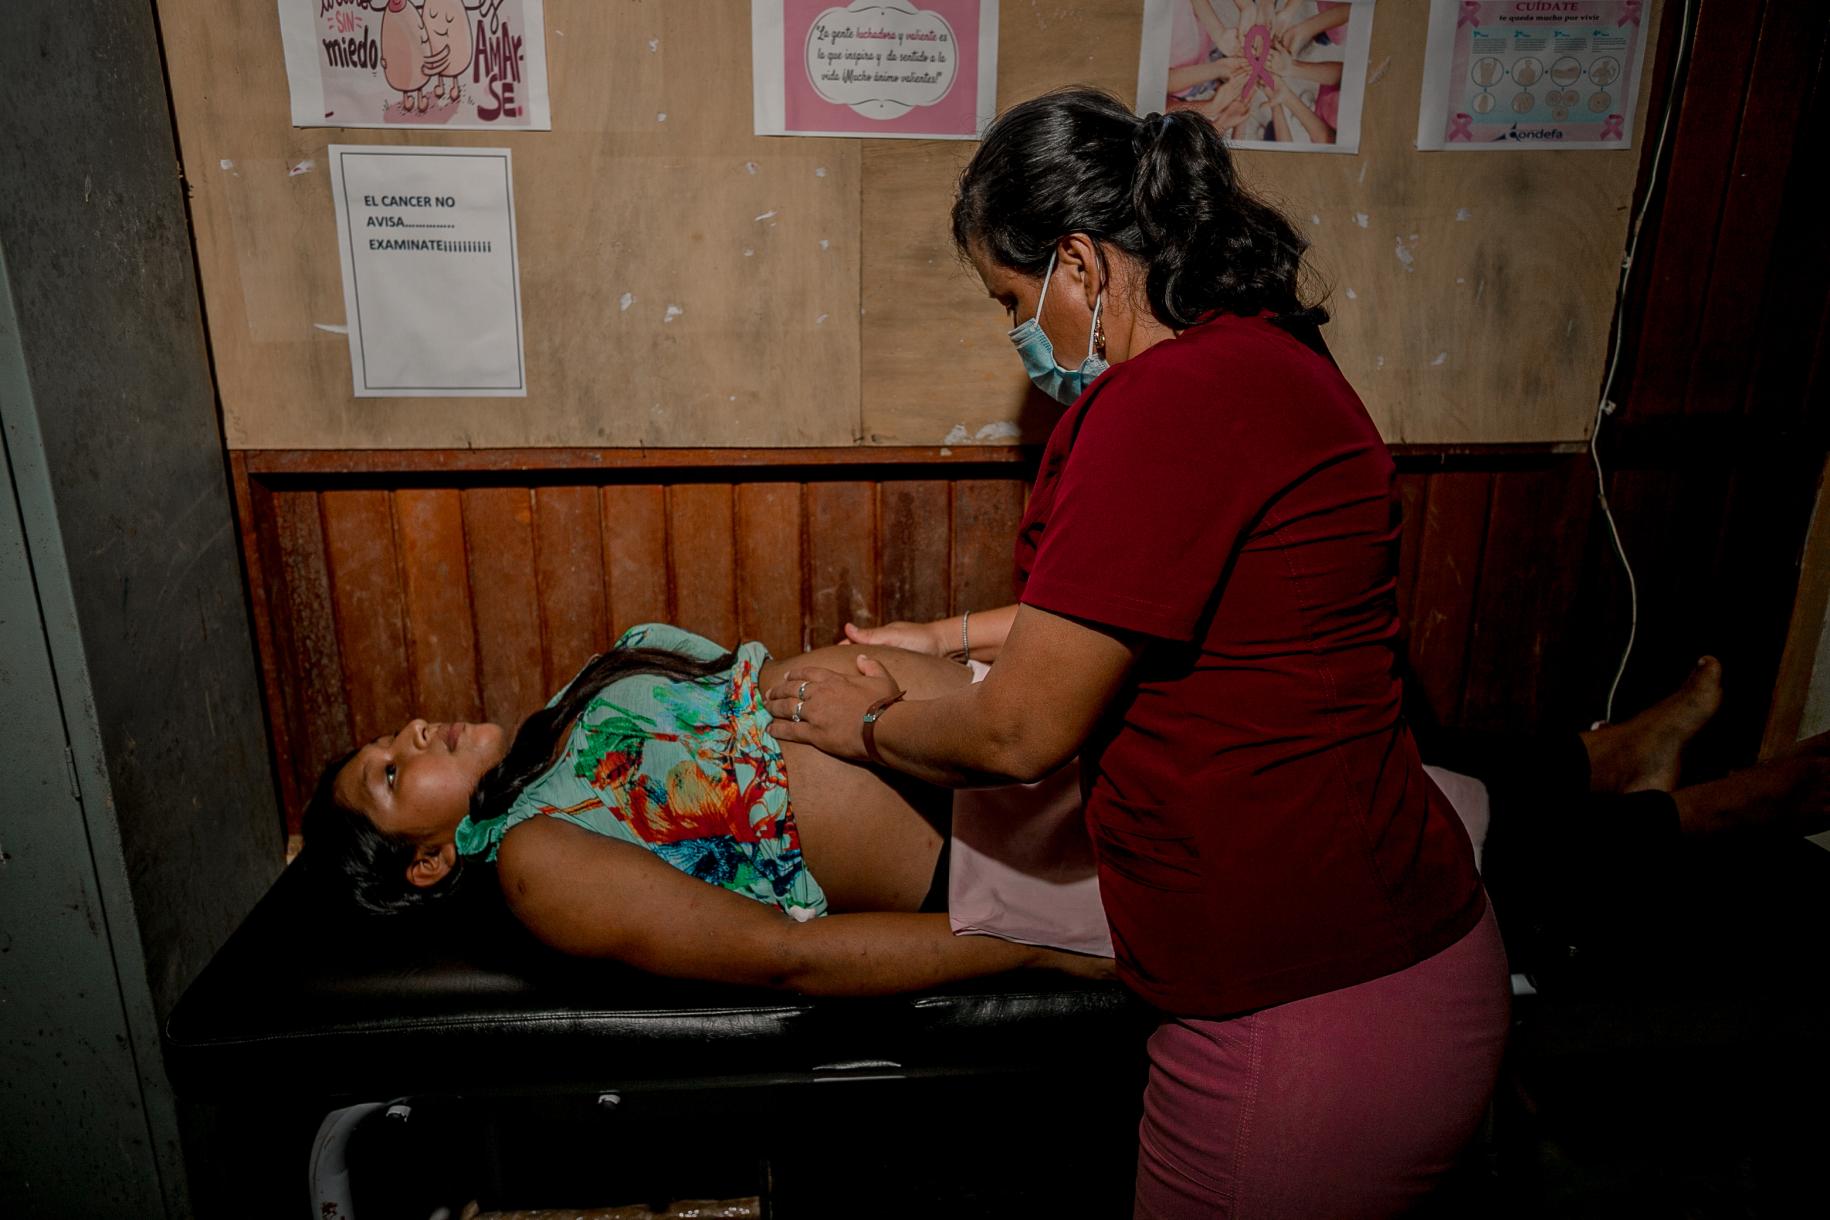 Personal sanitario auscultando a una paciente que se encuentra acostada sobre una camilla negra.